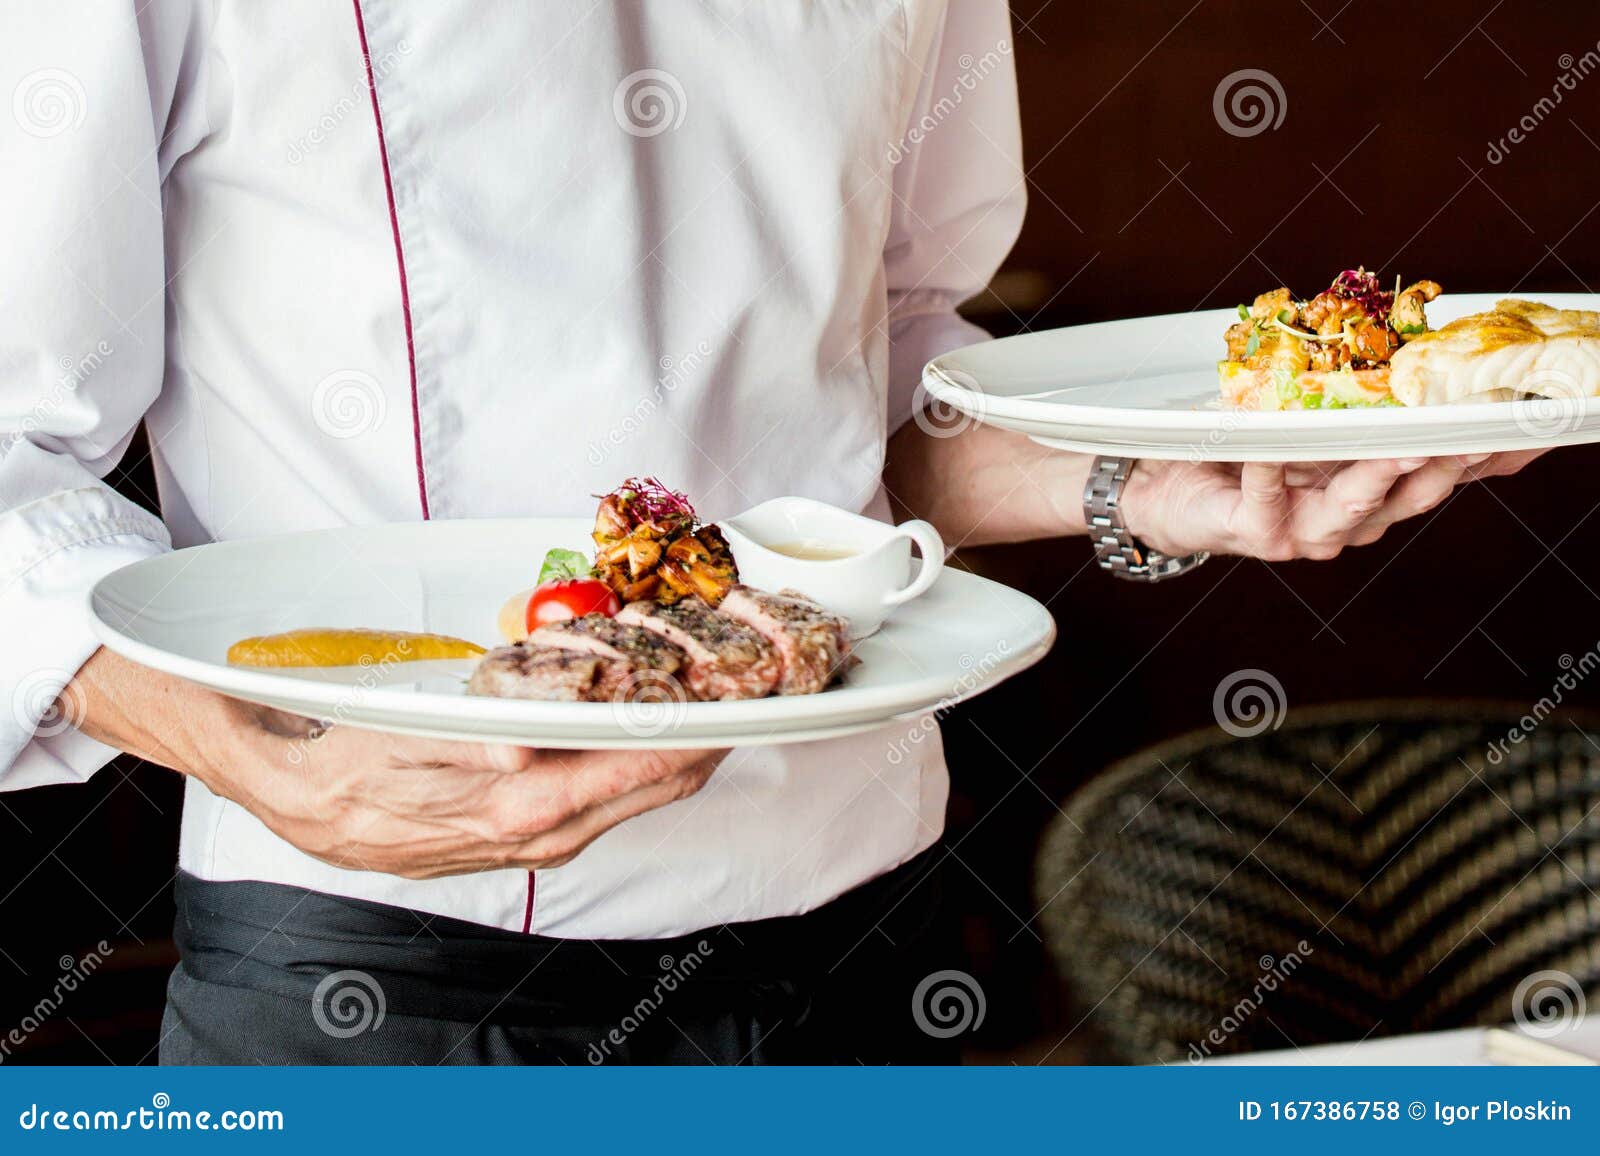 the waiter serves restaurant dishes